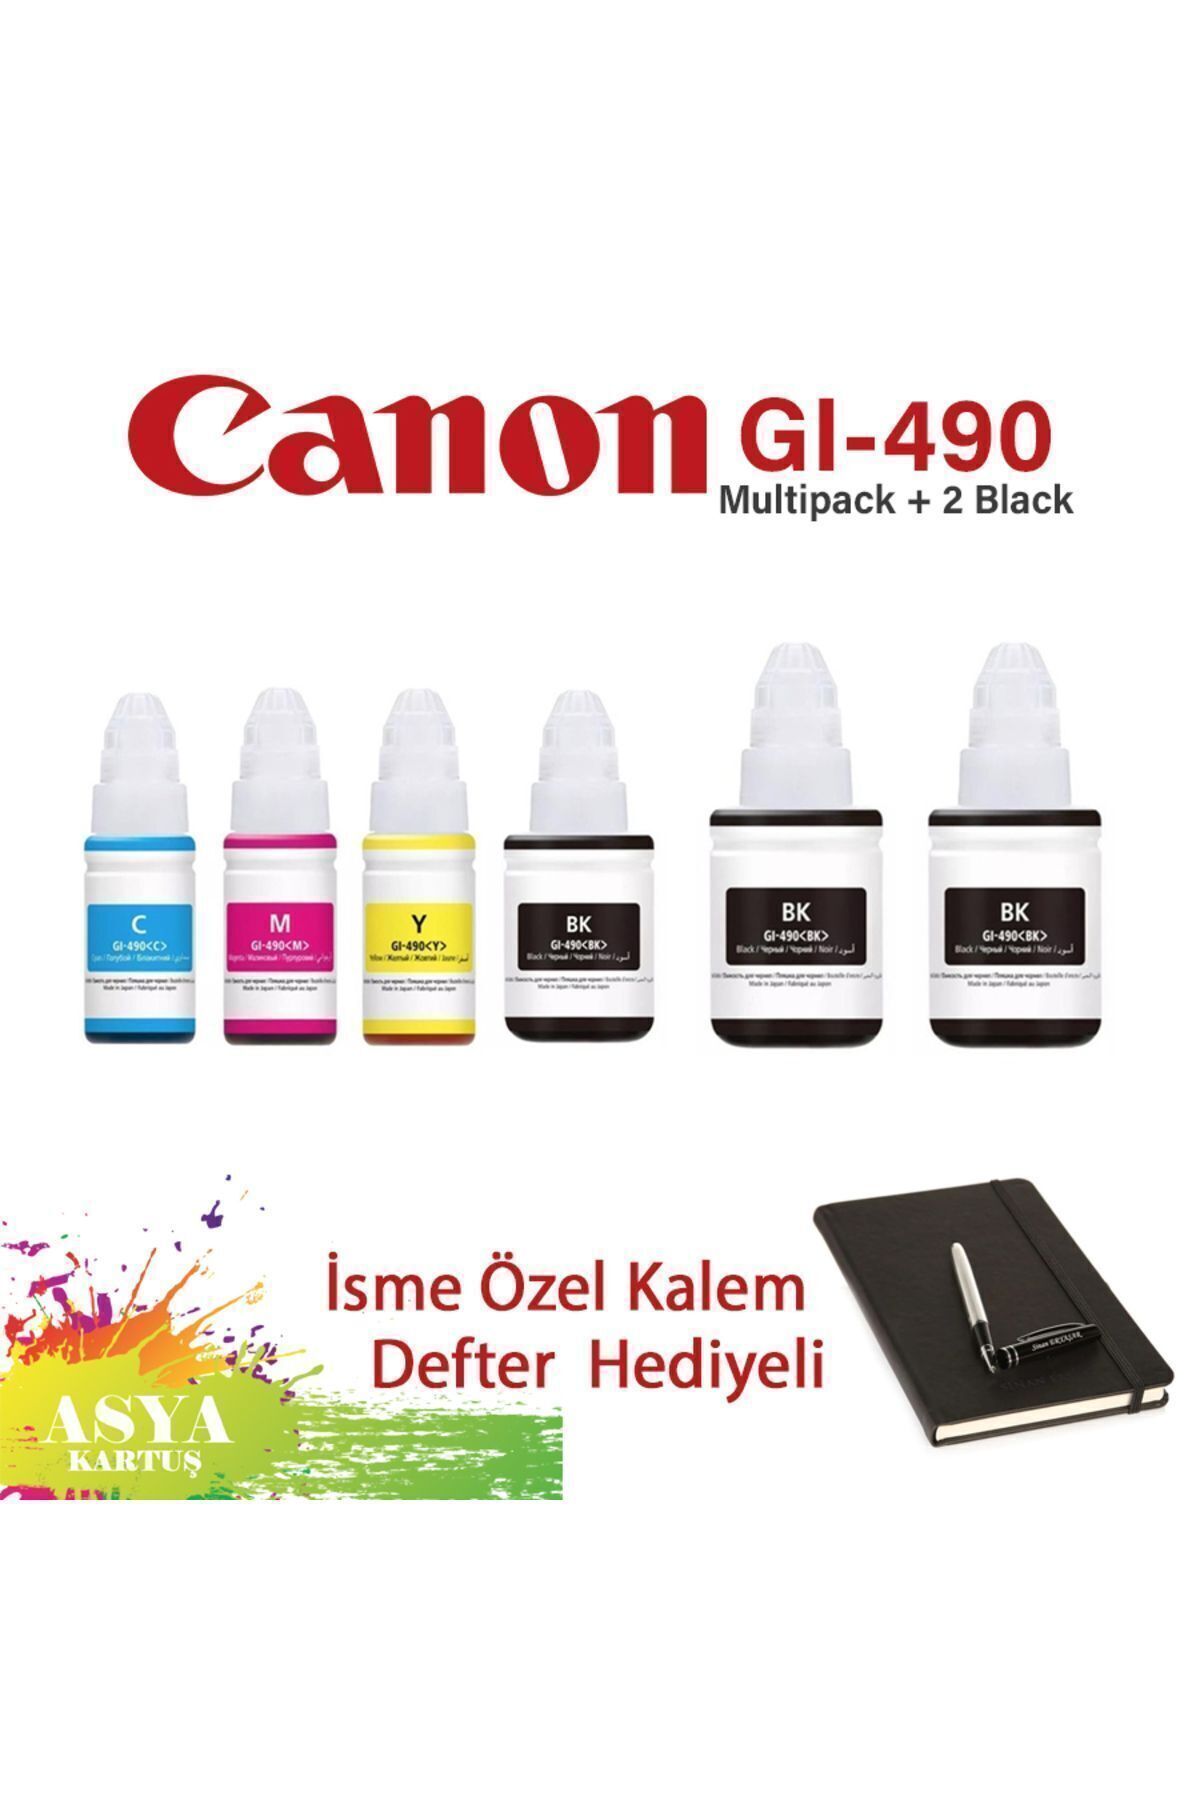 Canon Pixma G1411 Uyumlu GI-490 4 Renk Mürekkep + 2 Siyah Hediyeli   CMYK + 2 BK hediyeli Set